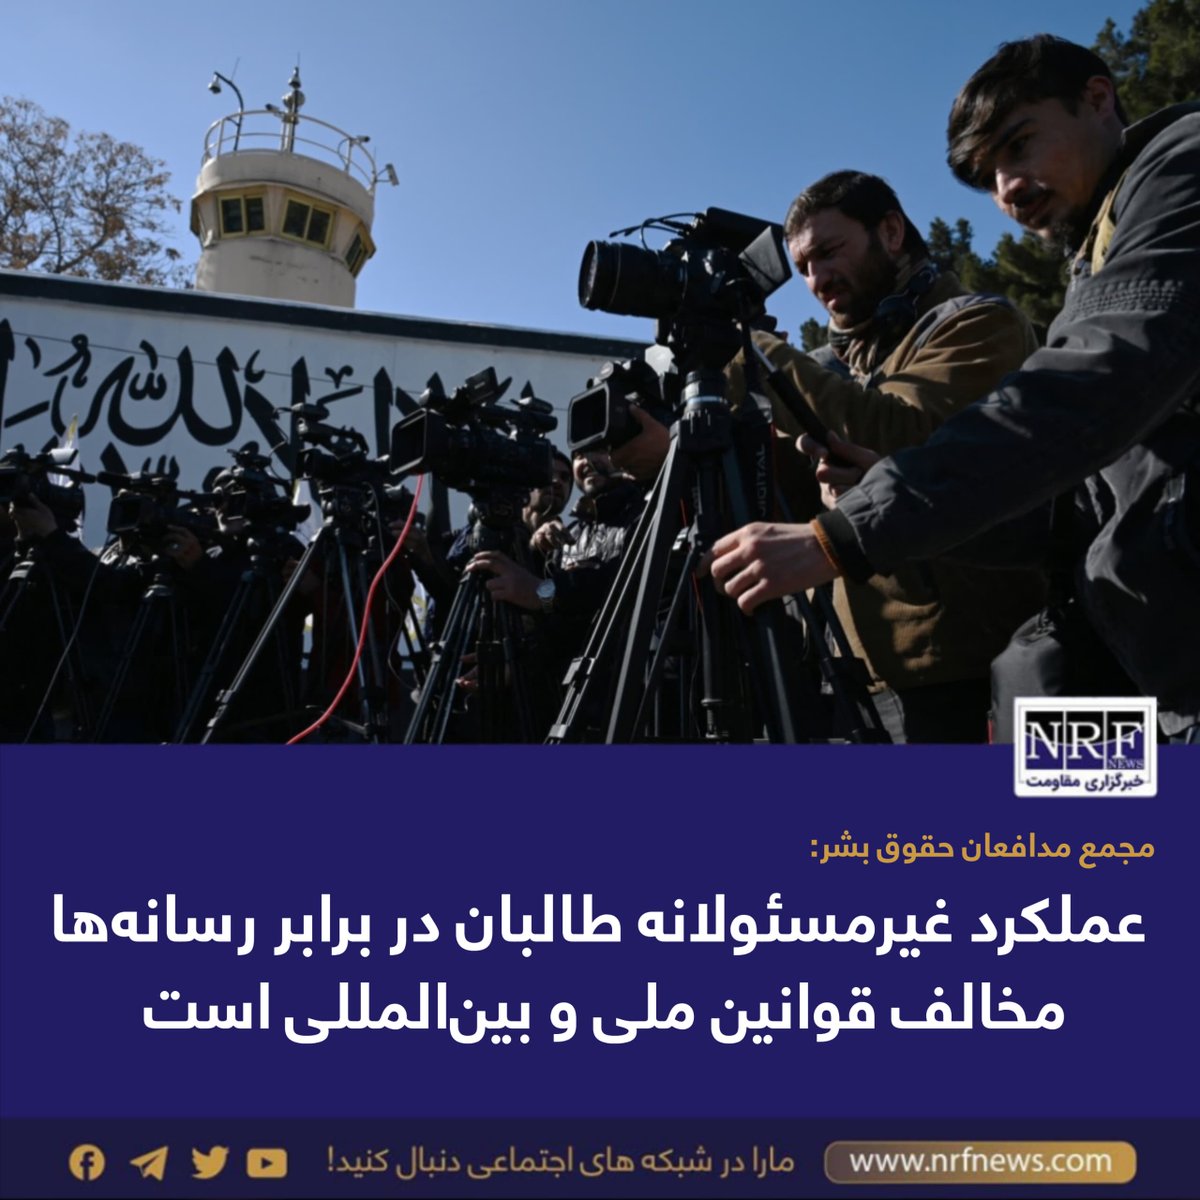 در واکنش به محدودیت‌های‌ روزافزون گروه طالبان بر رسانه‌ها در افغانستان مجمع مدافعان حقوق بشر (HRD) می‌گوید که این کار، نظارت بر حقوق بشر در افغانستان و حق شهروندان برای دسترسی به اطلاعات را محدود می‌کند. 

این مجمع روز جمعه، ۳۱ حمل با نشر بیانیه‌ای گفته که این عملکرد…